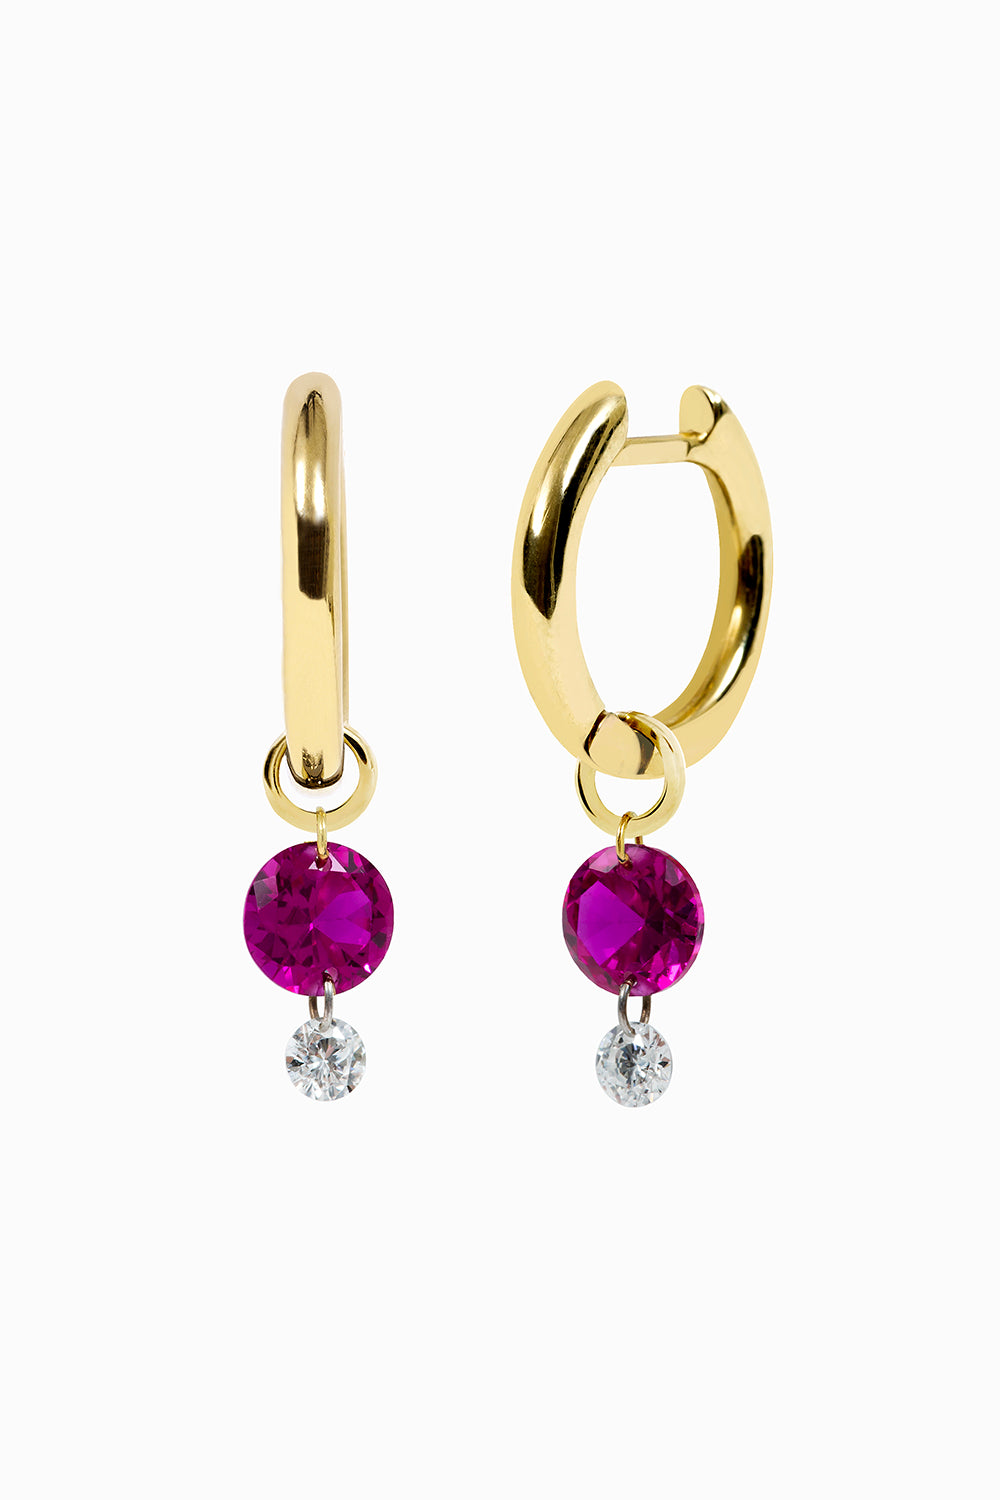 Ruby and diamonds hoop earrings